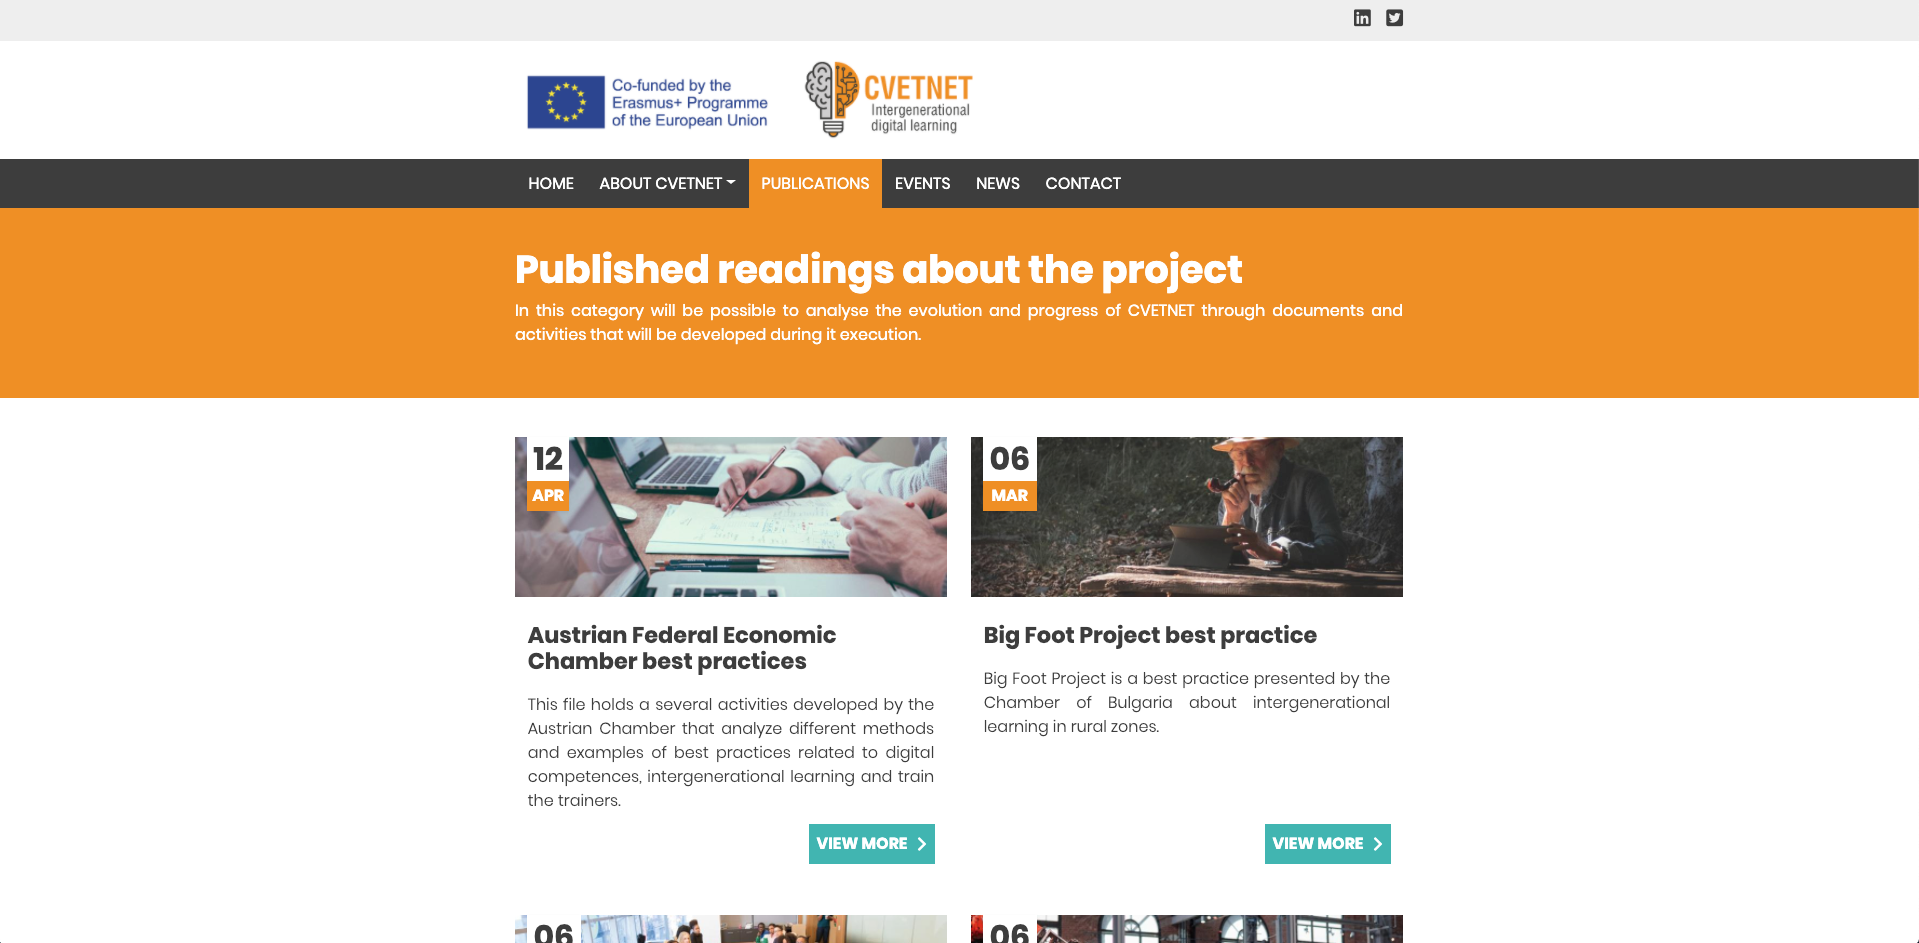 Página de publicaciones del portal de CVETNET